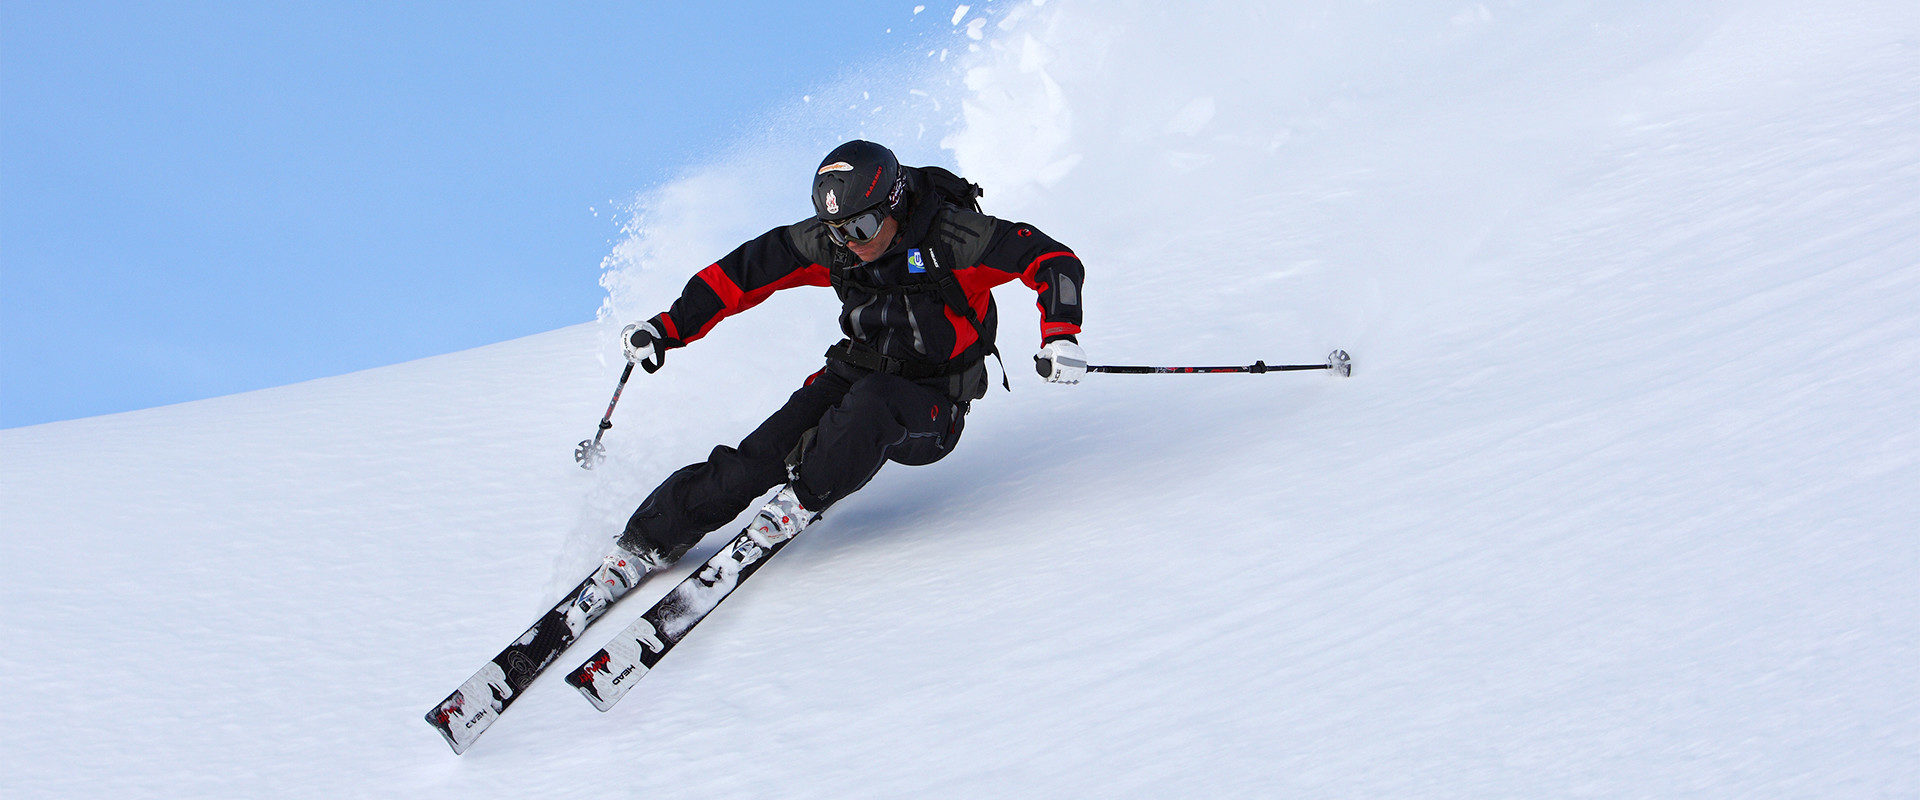 Hannes Rottensteiner beim Variantenskifahren in der alpinen Grundposition des Skilaufs